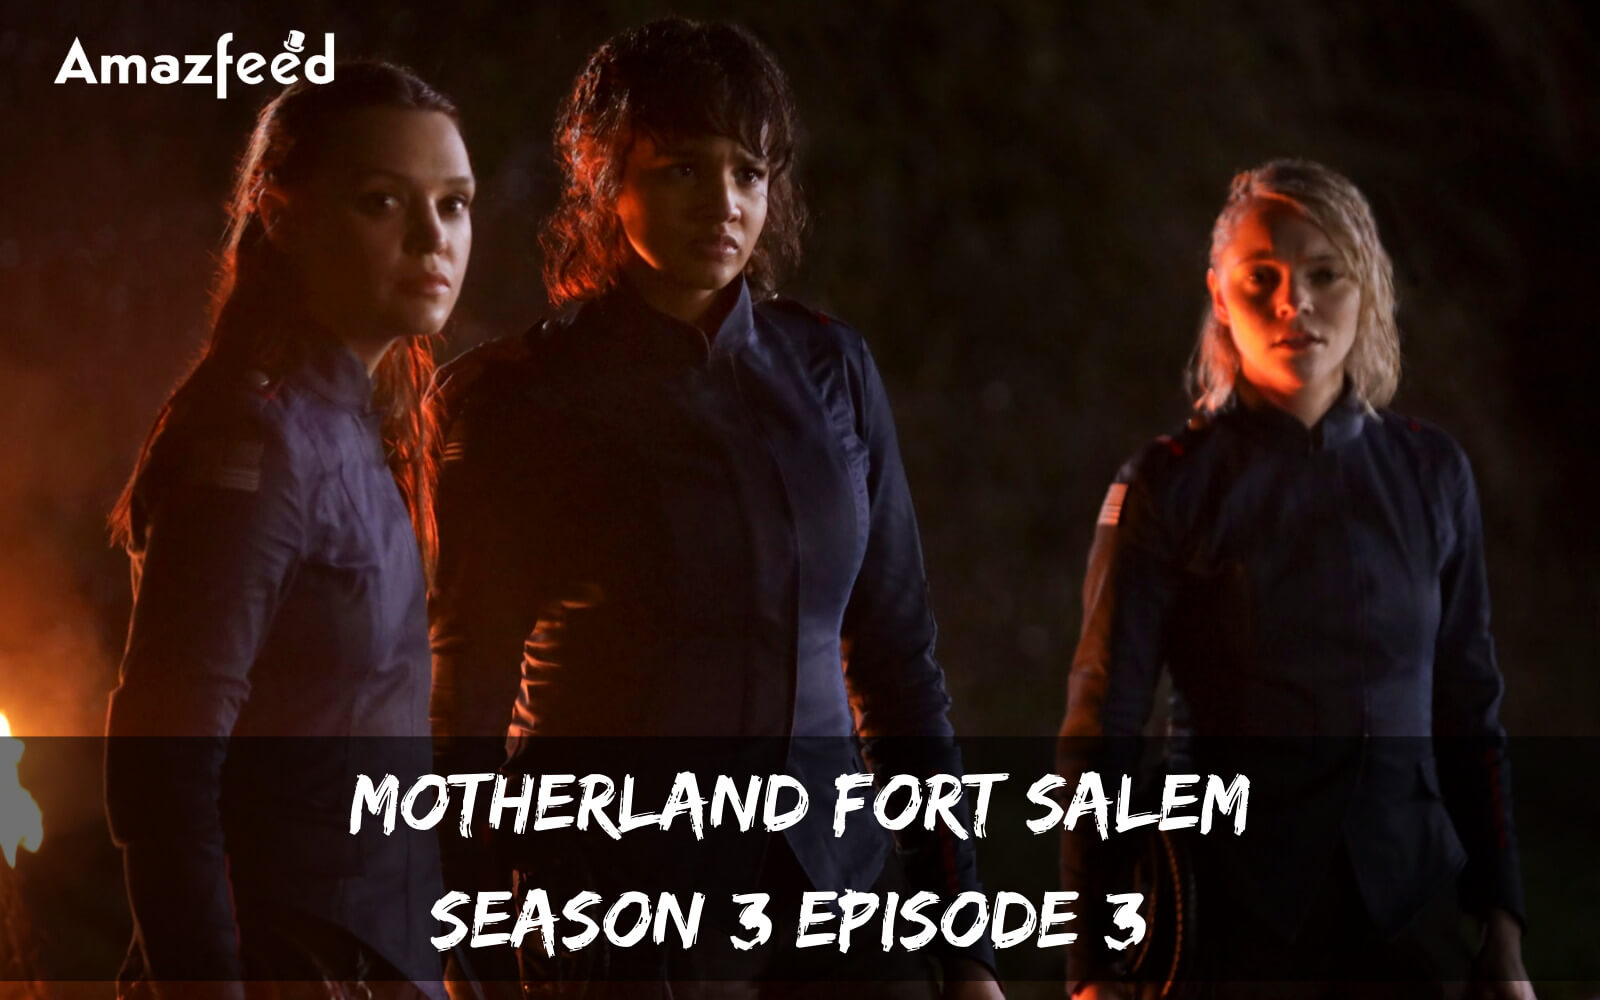 Motherland Fort Salem Season 3 Episode 3 release date